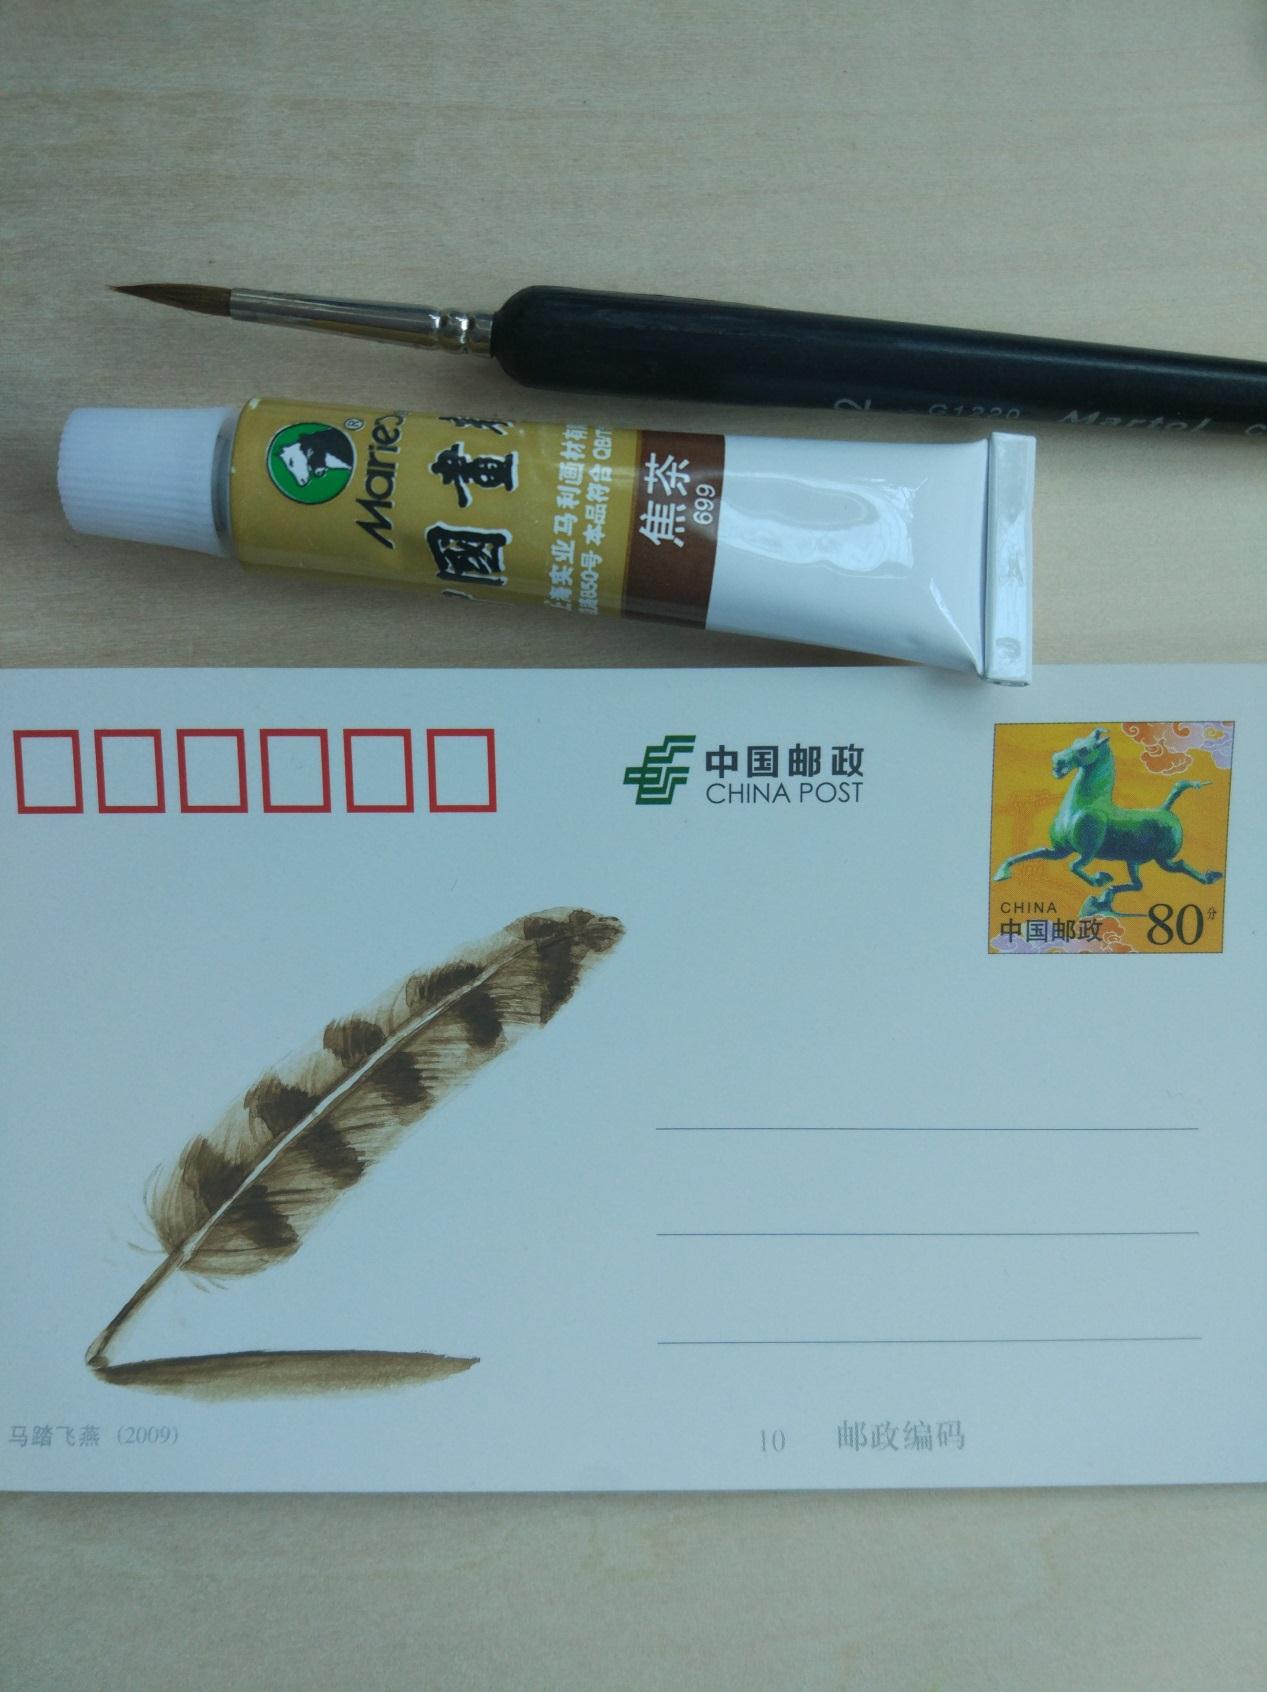 原创简单的DIY小制作 教你用明信片来制作羽毛手绘贺卡